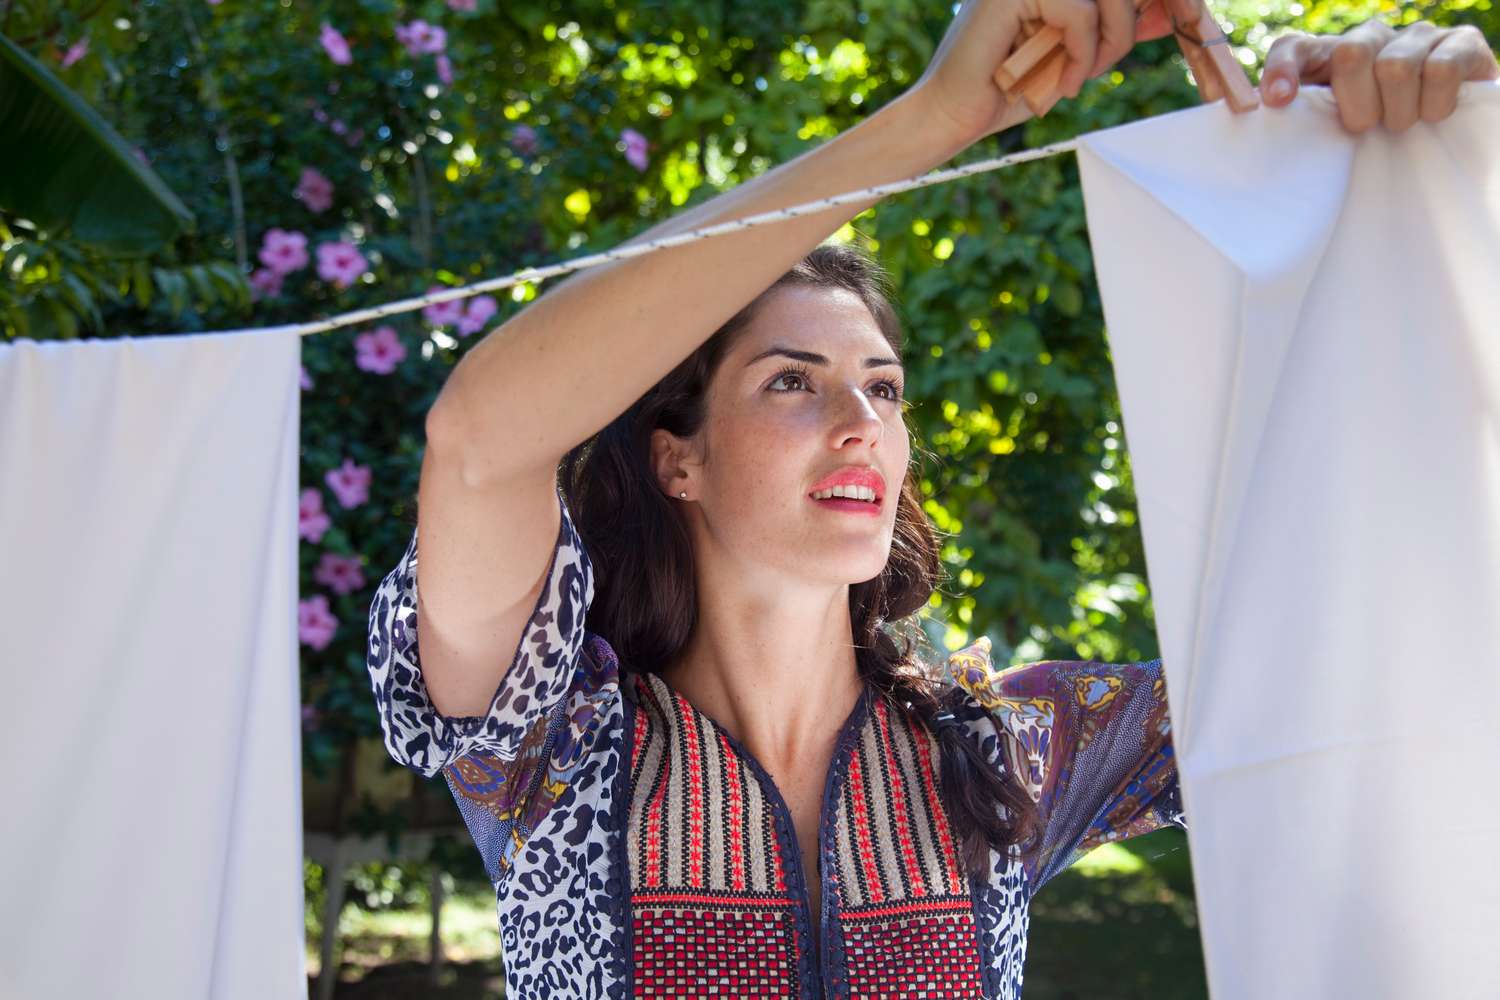 Mujer colgando la ropa en un tendedero exterior.